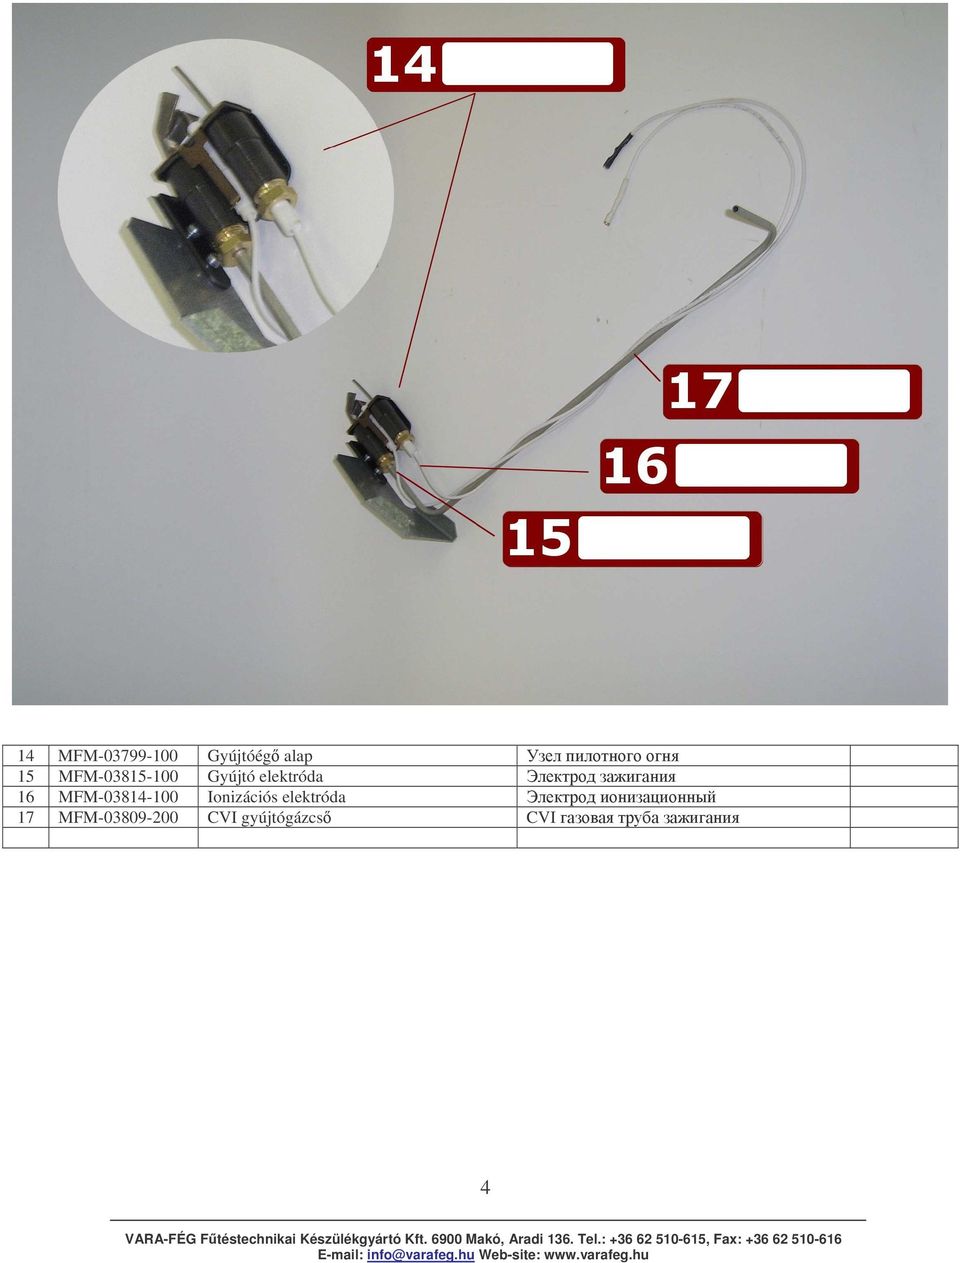 MFM-03814-100 Ionizációs elektróda!